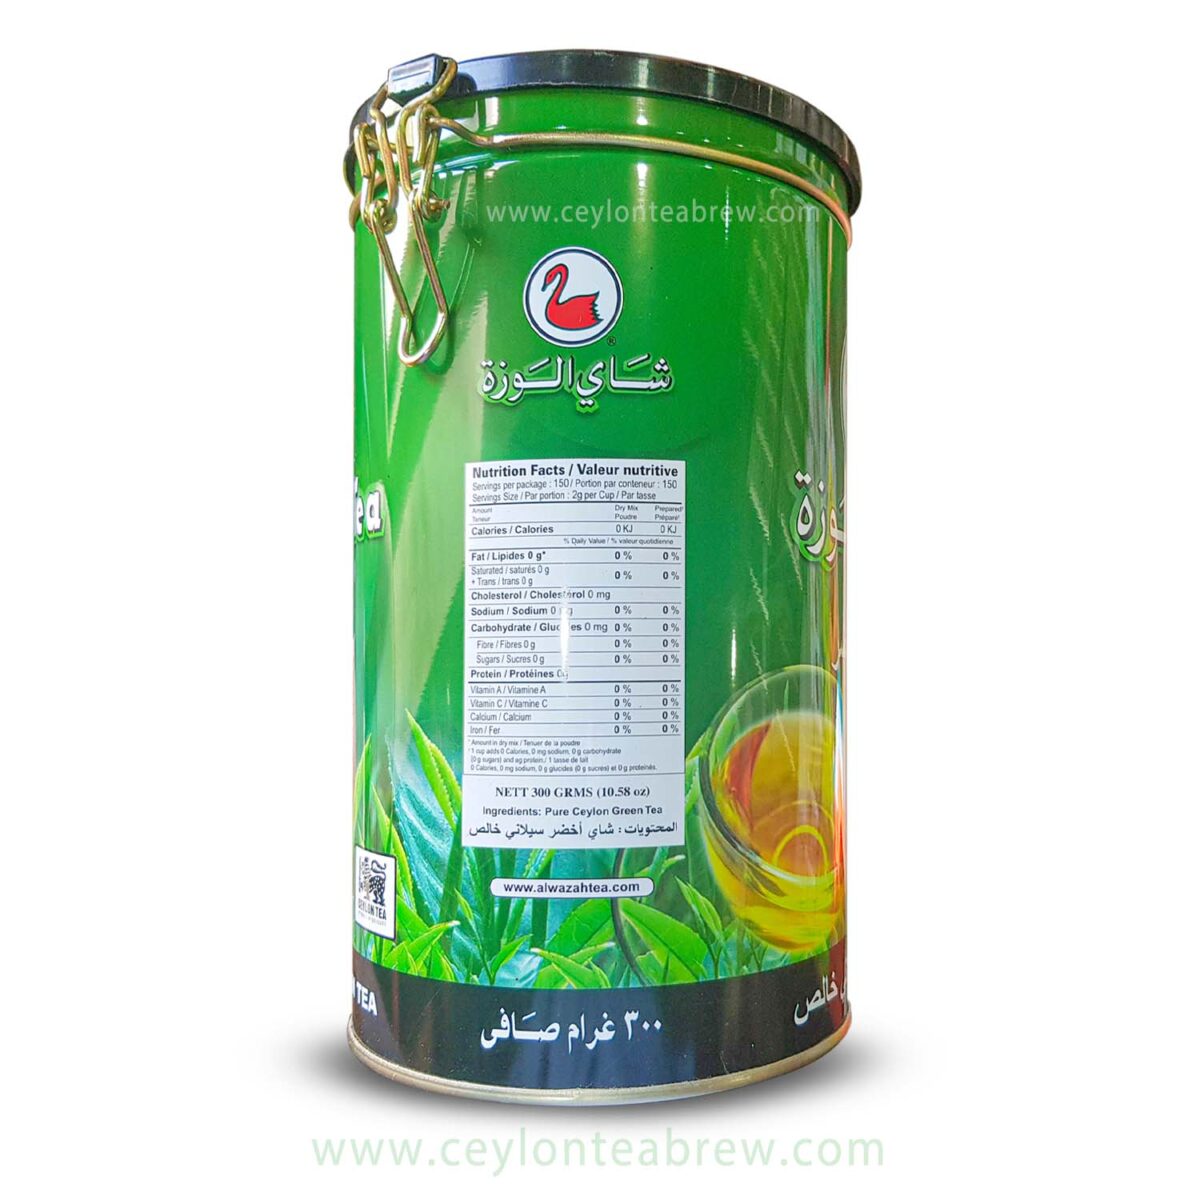 Alwazah Ceylon pure green leaf tea